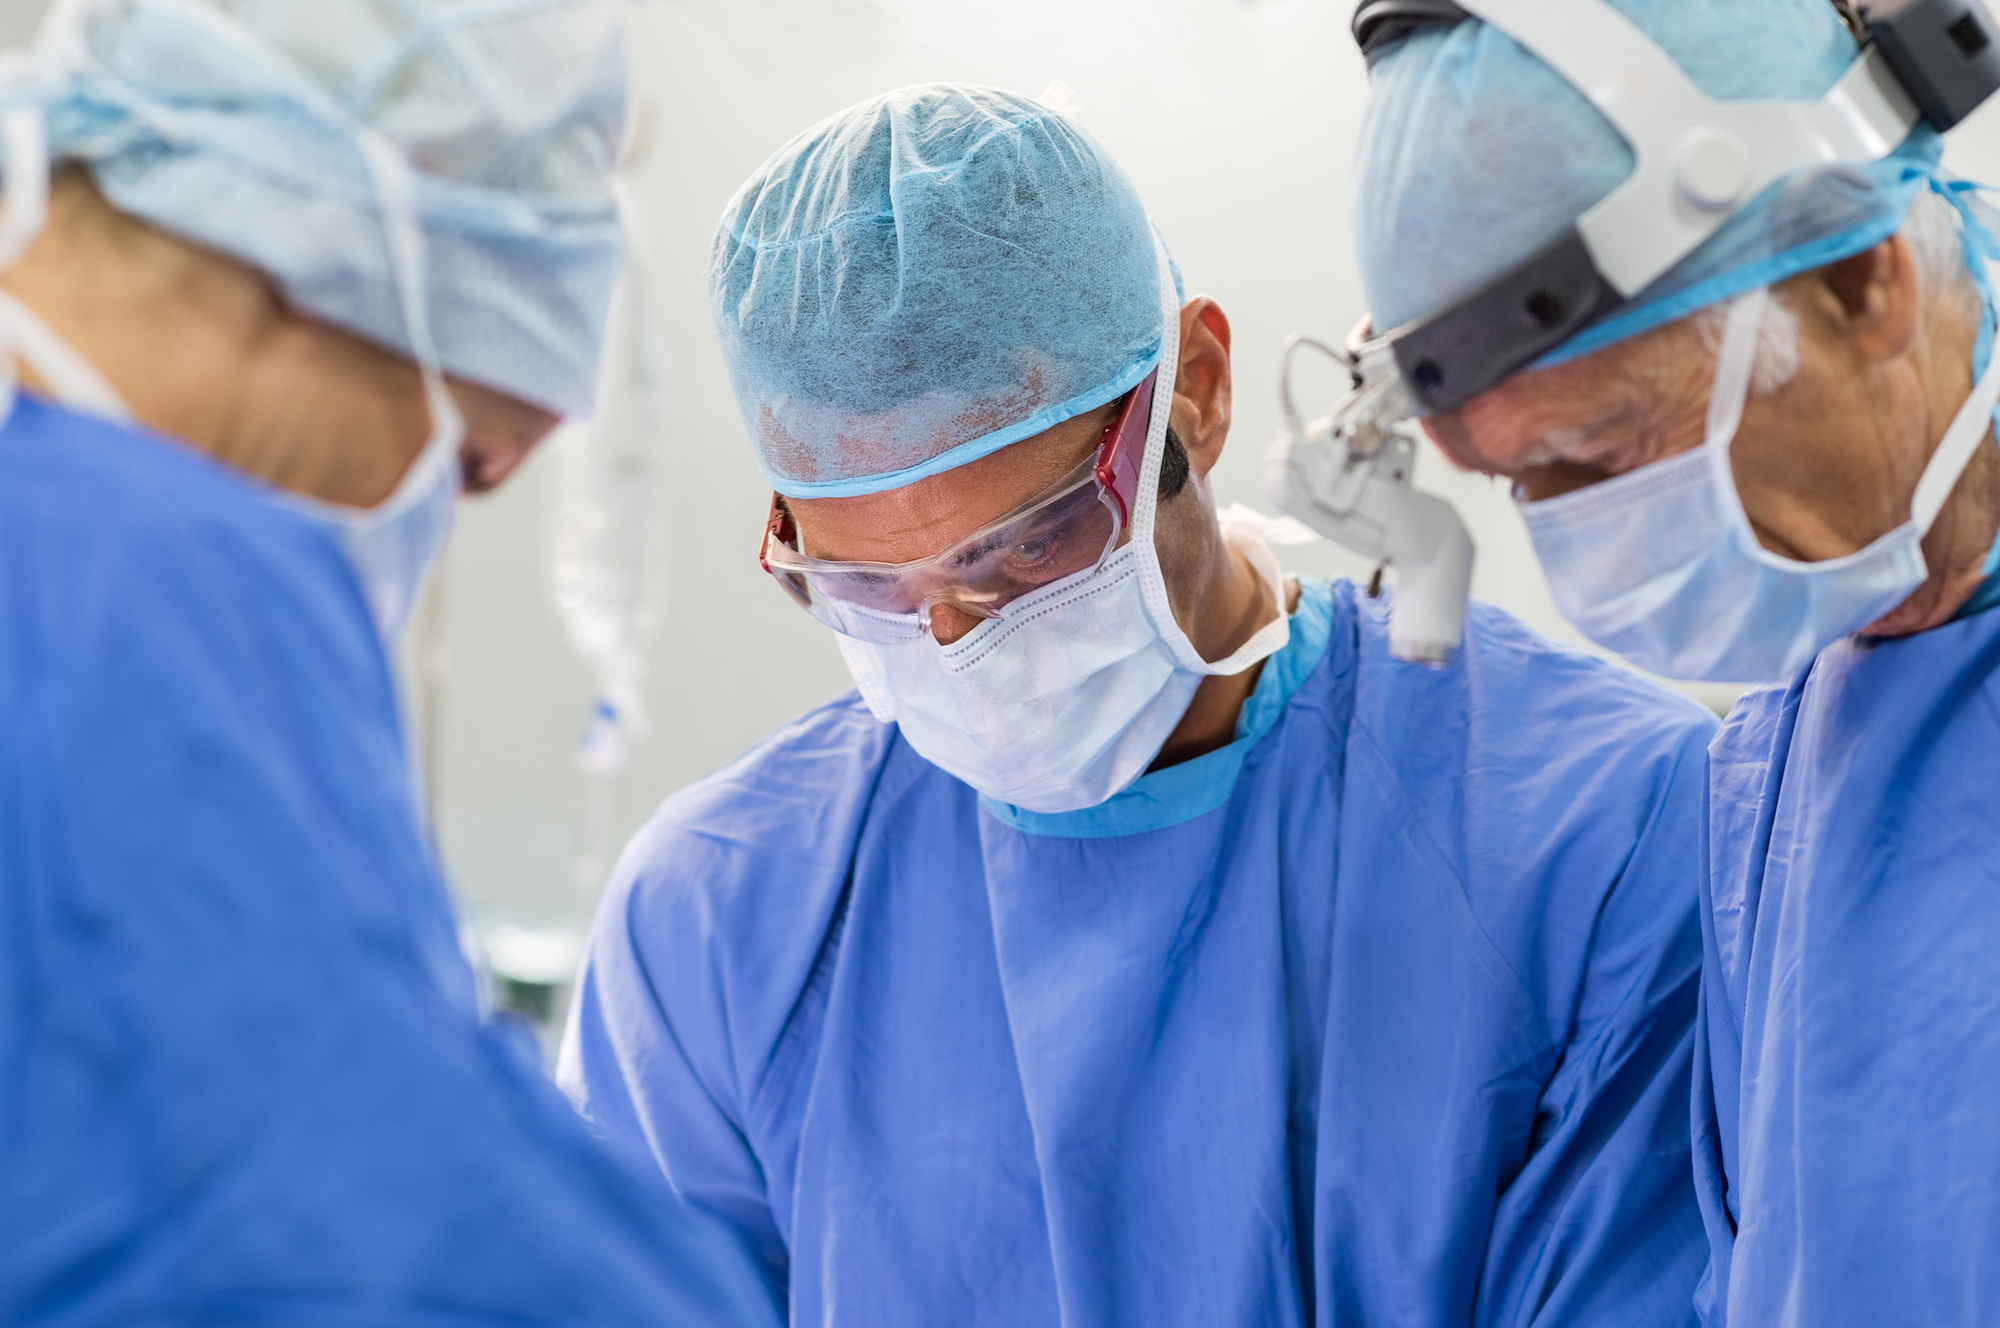 Chirugia robotica: tumore asportato con 5 incisioni da 7 millimetri